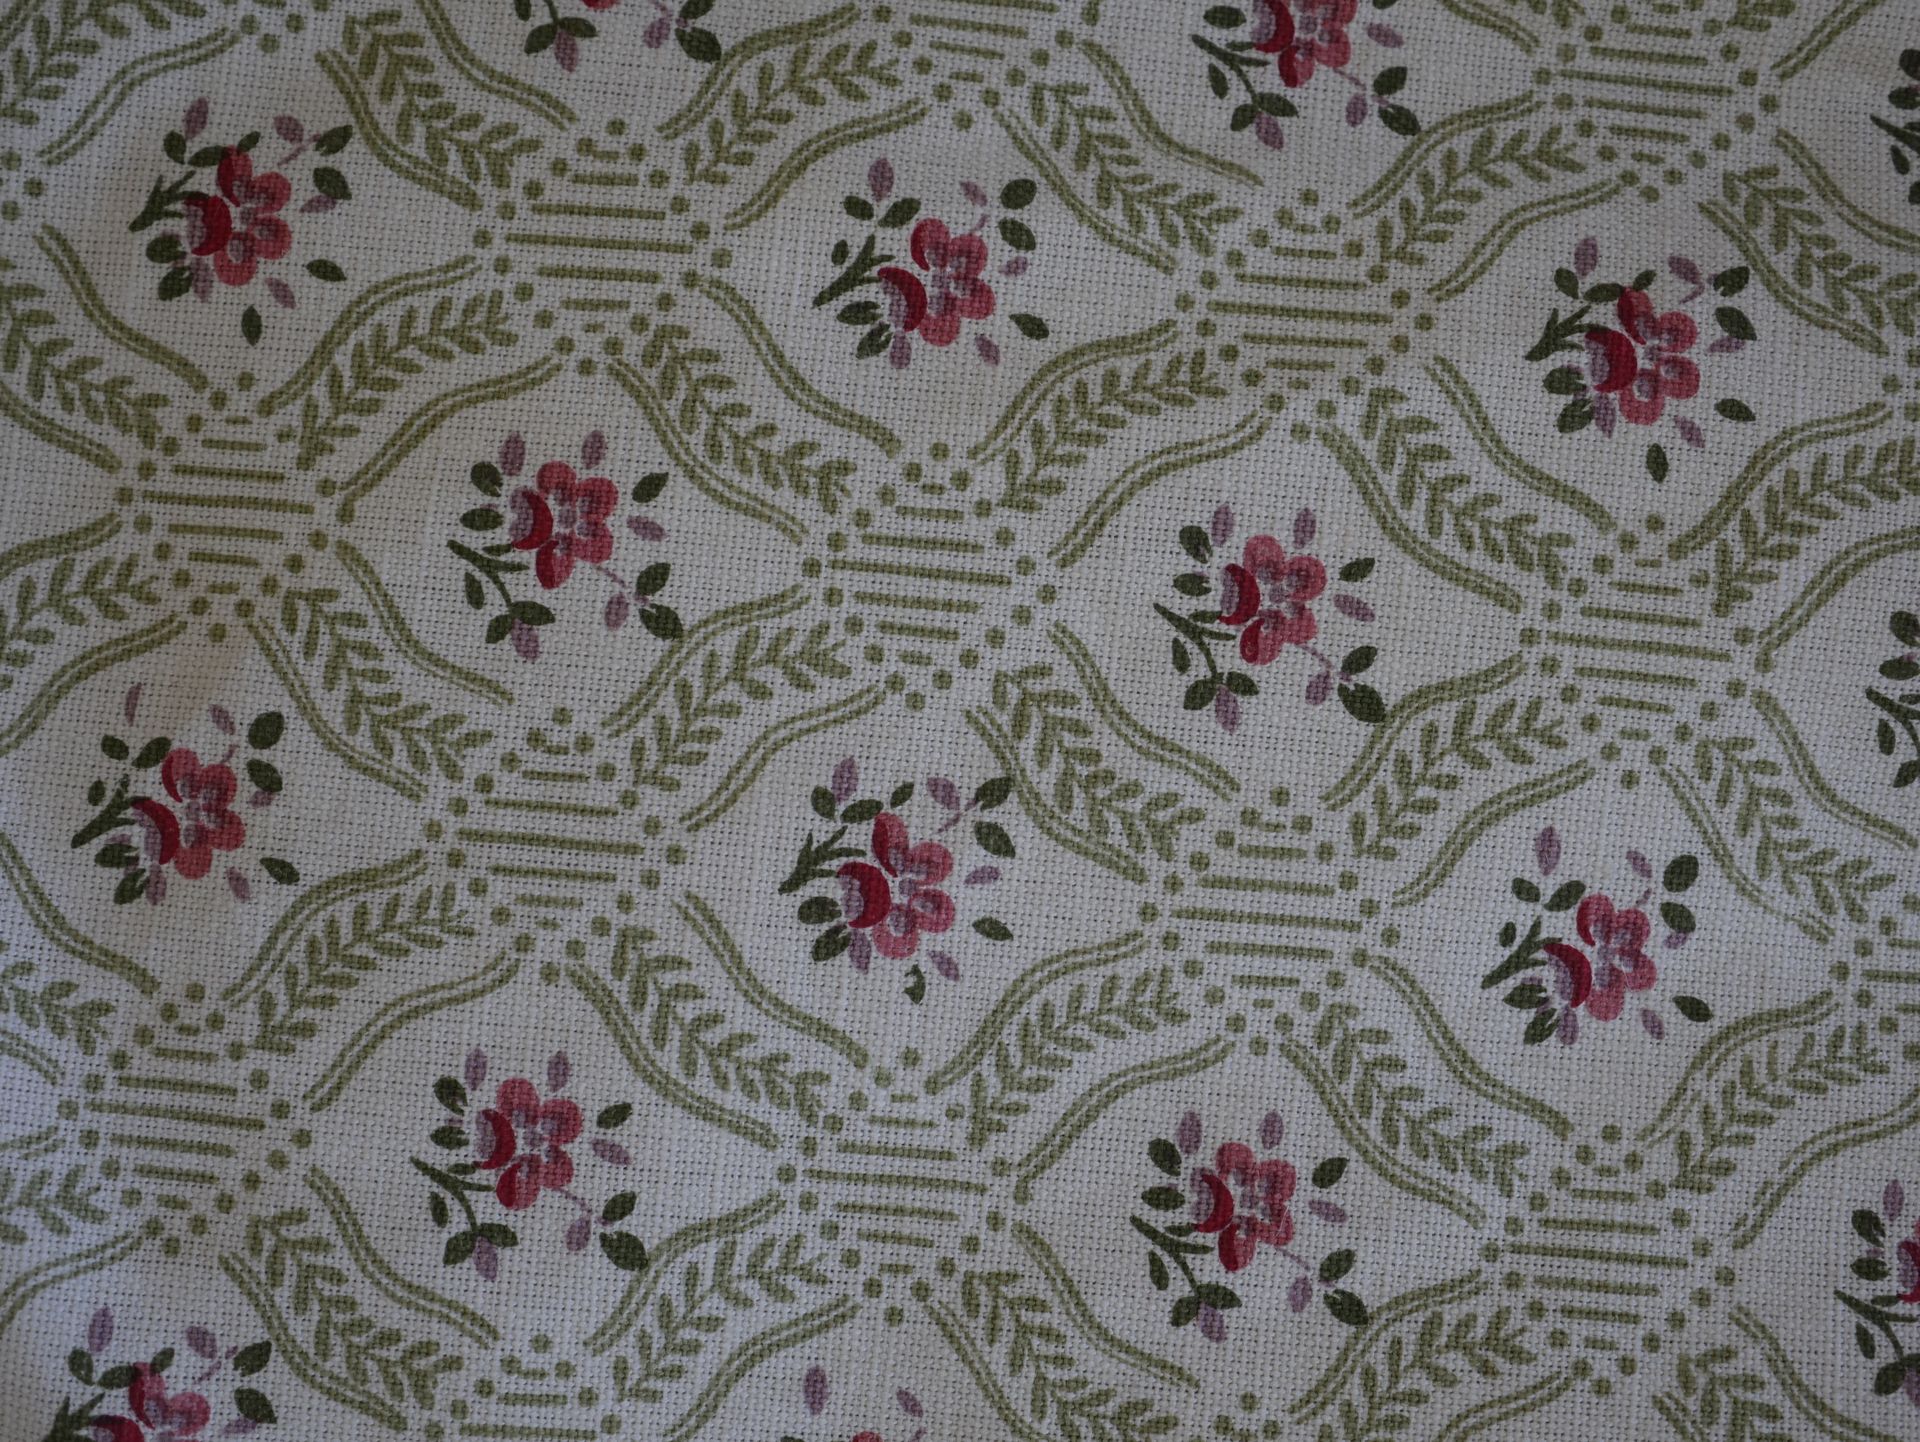 Null 两副米色的兰帕斯窗帘，上面有花的图案。高度为320厘米，宽度为90厘米。

包括一对有格子和花纹图案的棉质窗帘。高度320厘米，宽度54厘米，每个